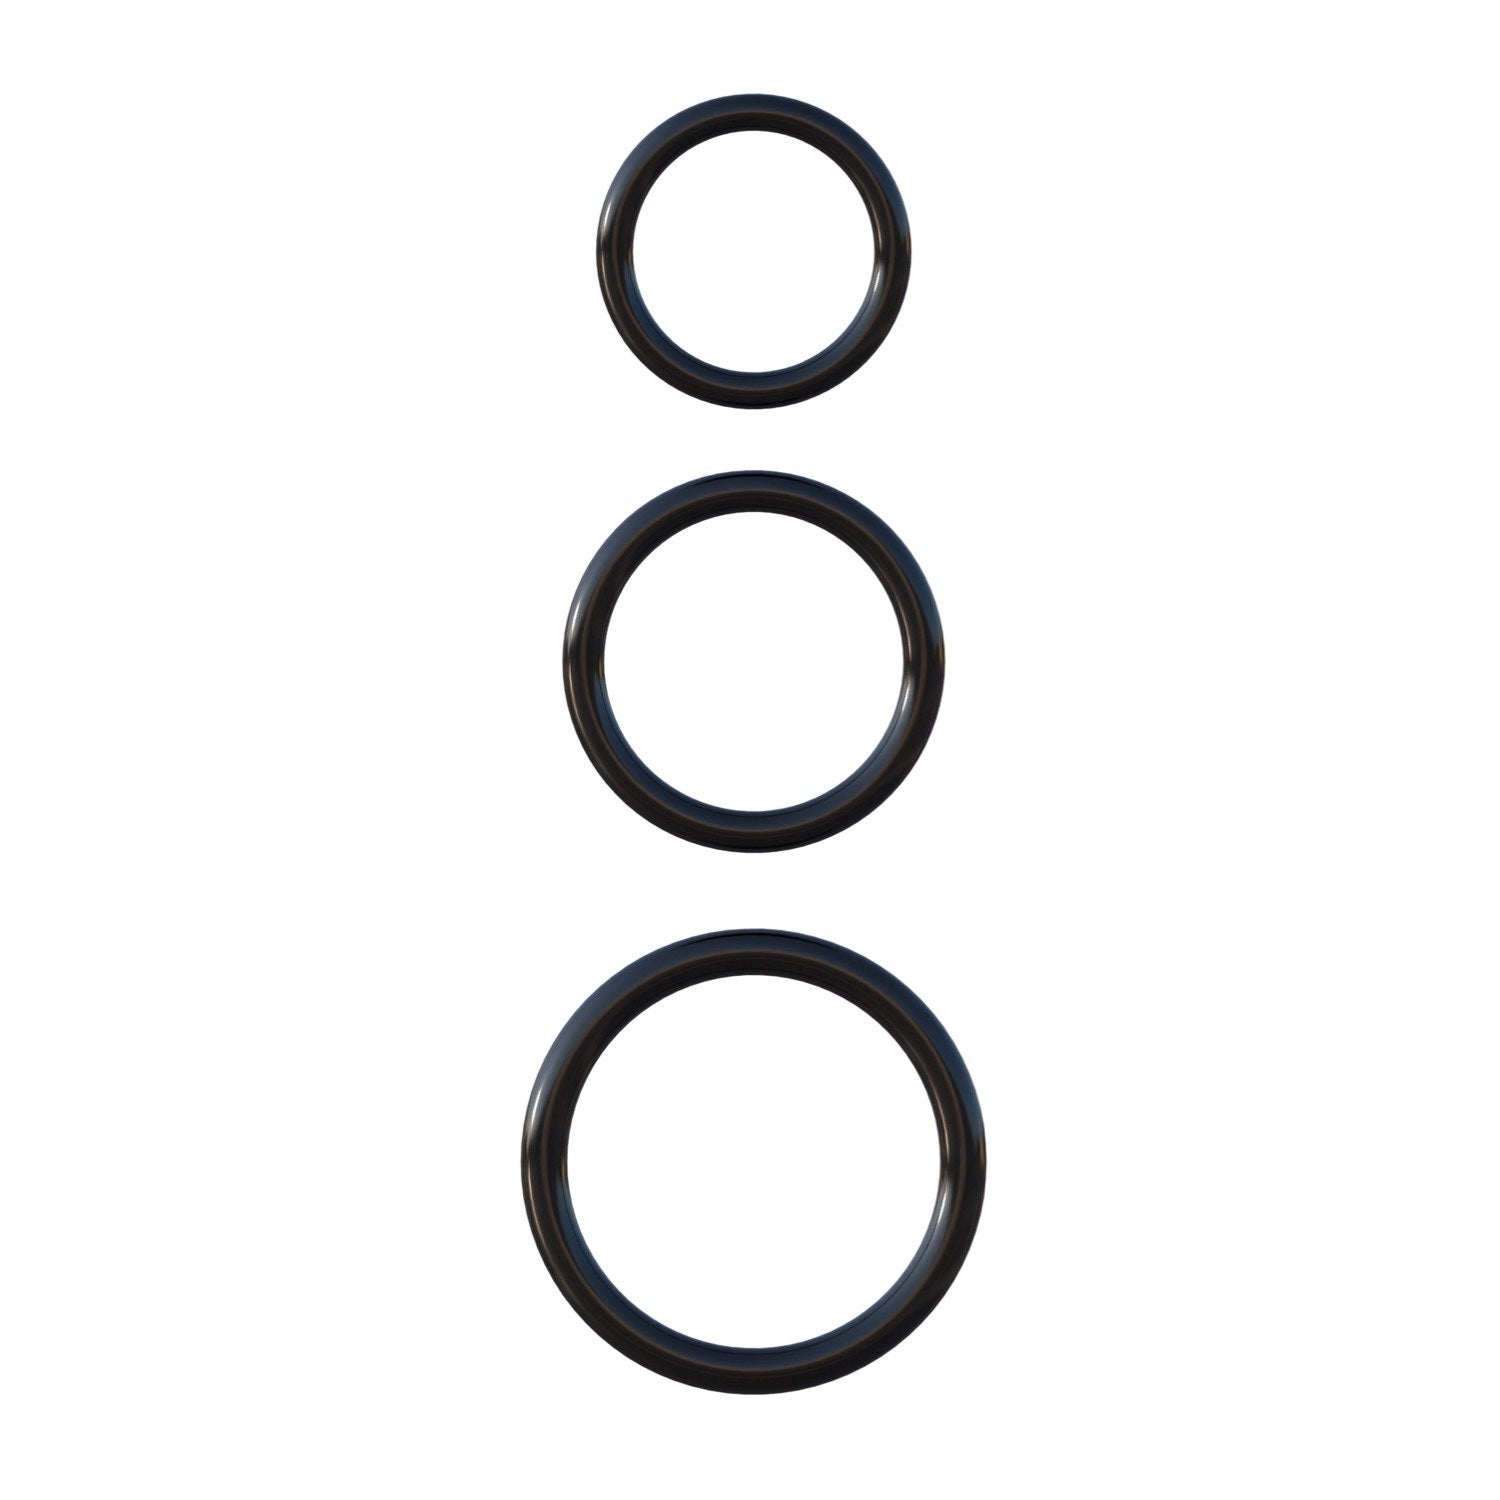 幻想C环 硅胶 3 环耐力套装 - 黑色阴茎环 - 3 件套 by Pipedream